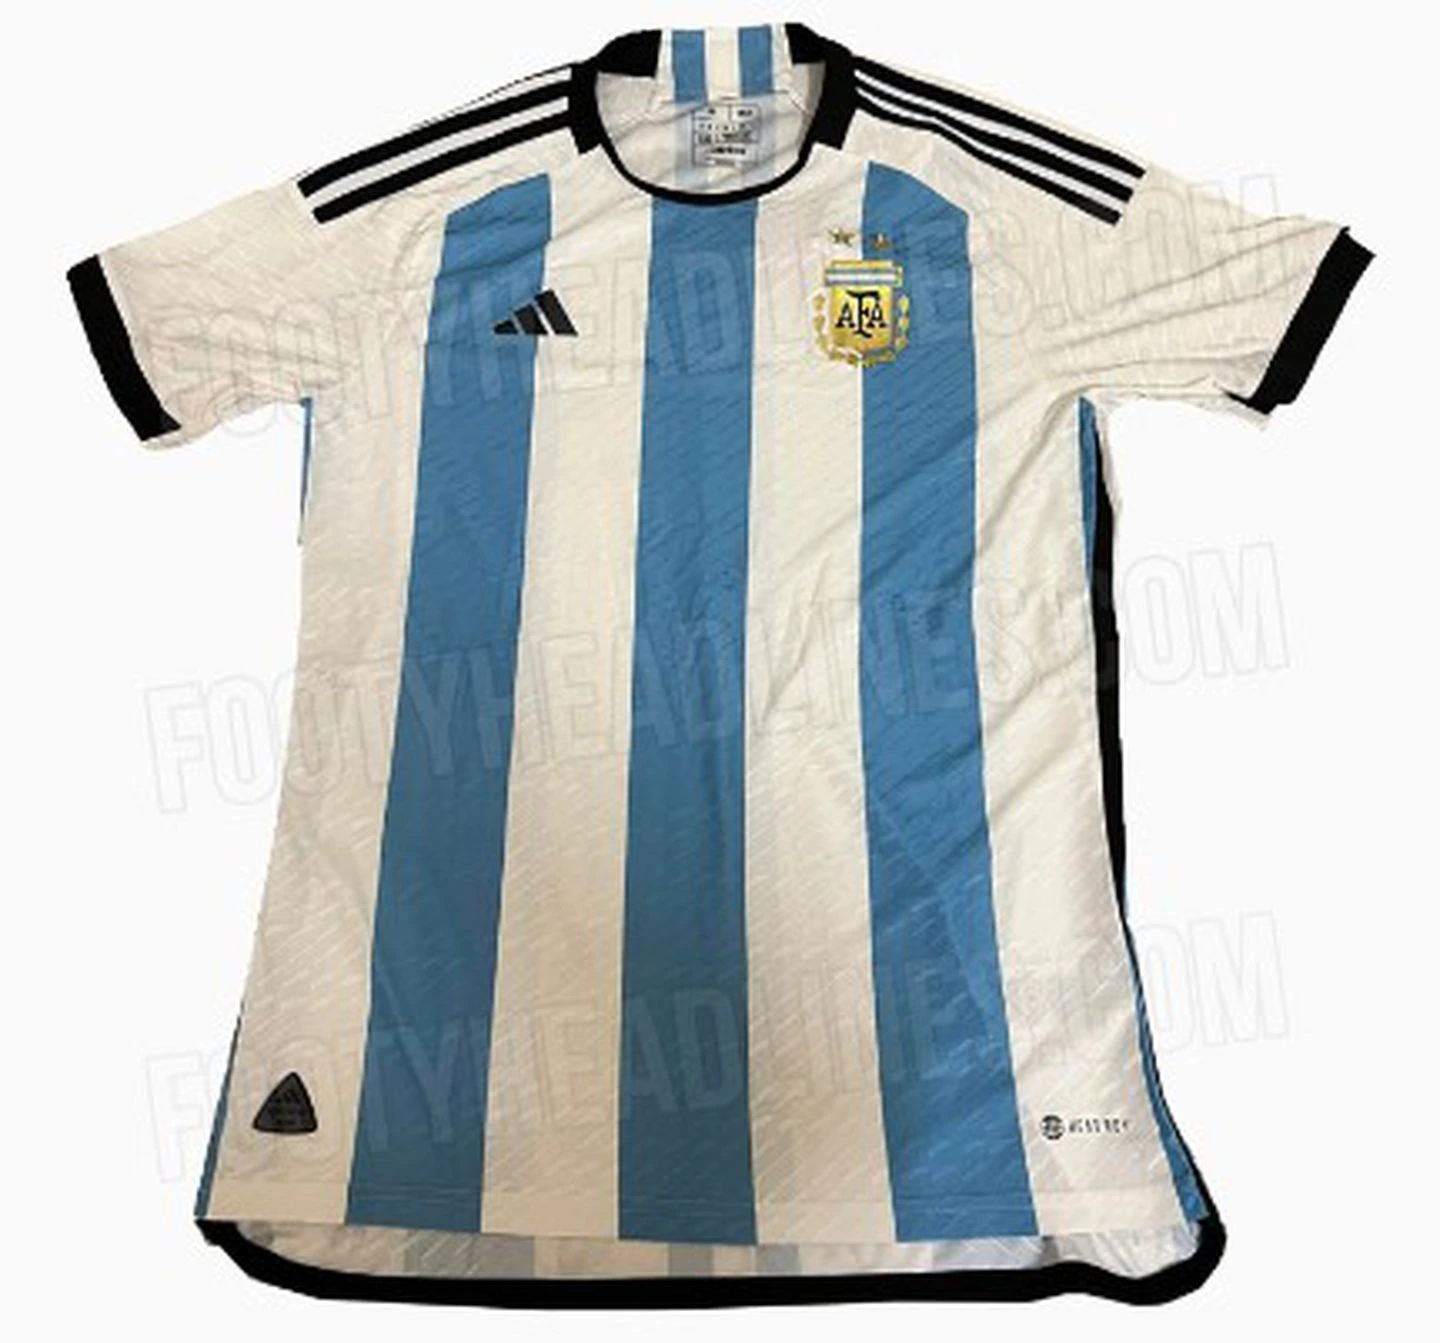 Se filtró el diseño de la camiseta que utilizaría la Selección argentina en Qatar